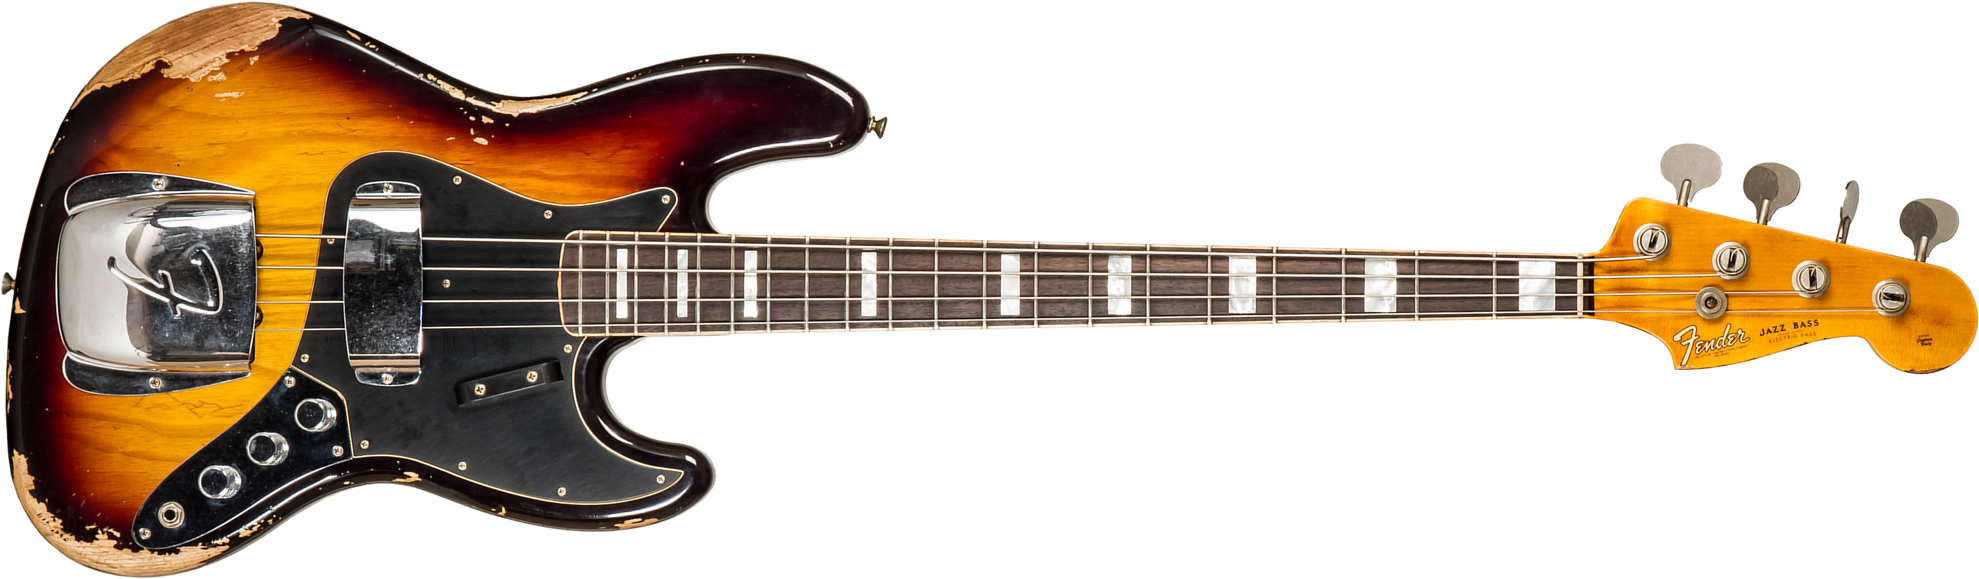 Fender Custom Shop Jazz Bass Custom Rw #cz575919 - Heavy Relic 3-color Sunburst - Bajo eléctrico de cuerpo sólido - Main picture